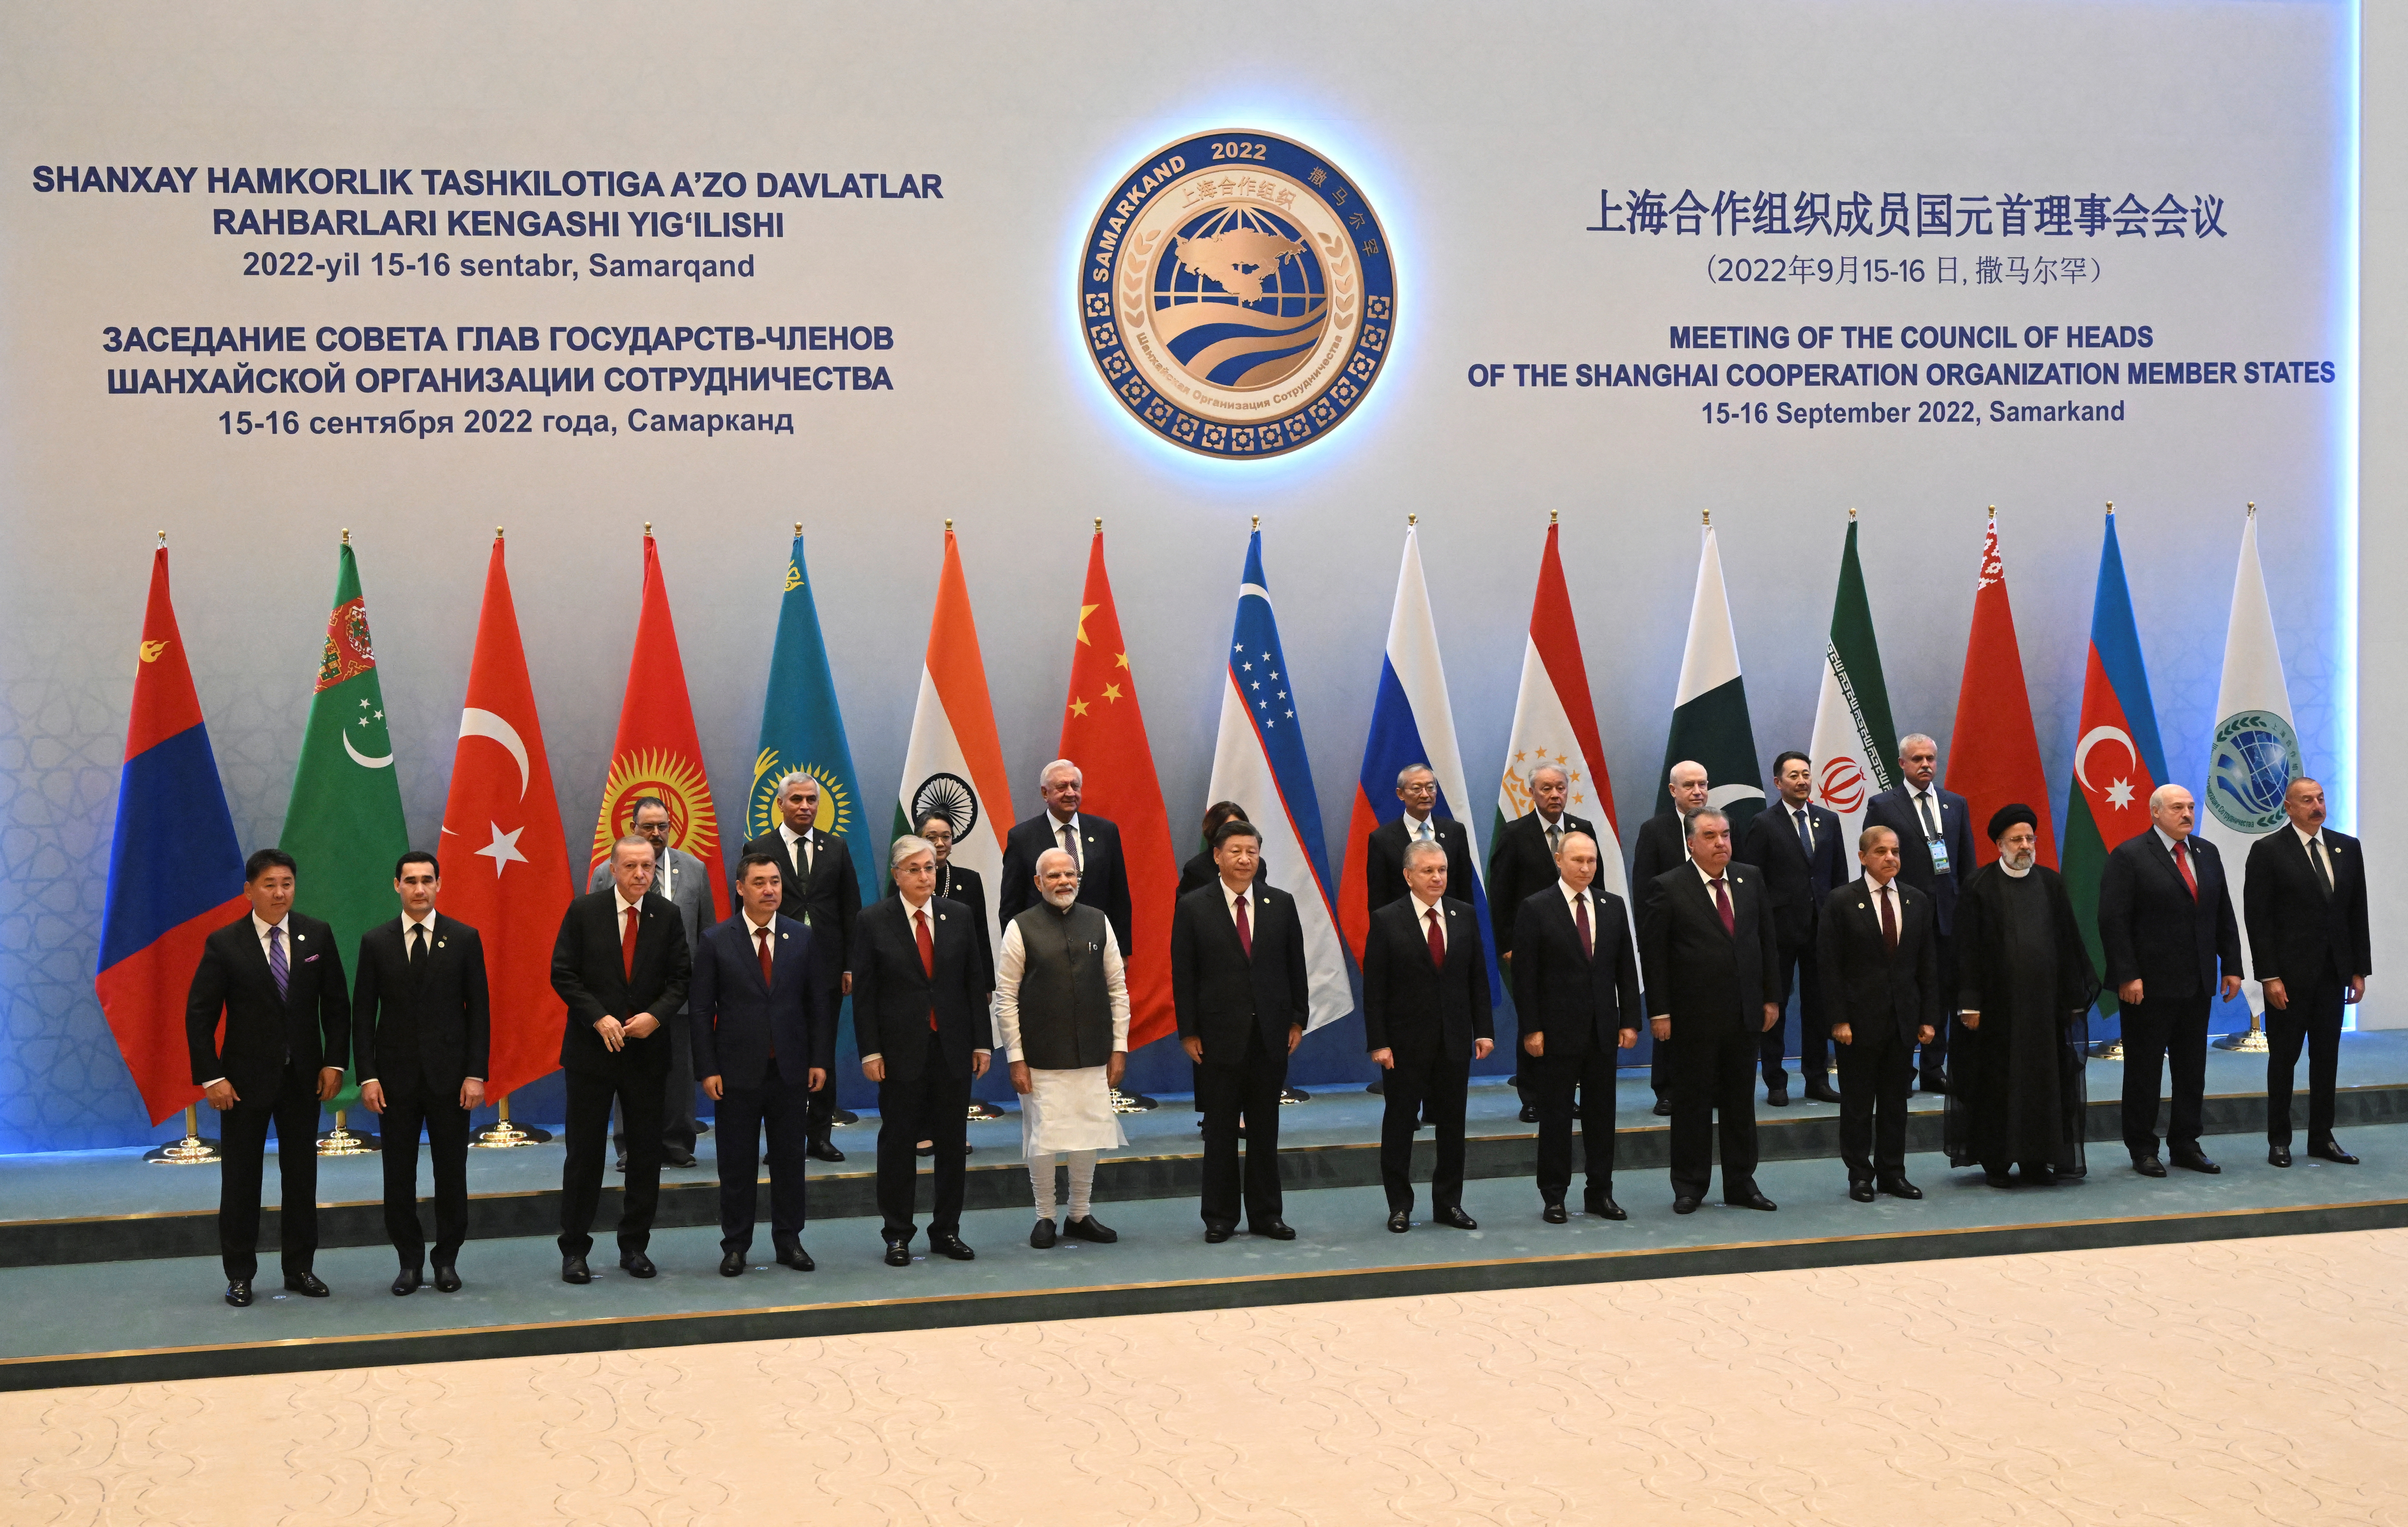 Los líderes que participan en la cumbre de la Organización de Cooperación de Shanghái, en Samarcanda, Uzbekistán 16 de septiembre de 2022. Sputnik/Sergey Bobylev/Pool vía REUTERS